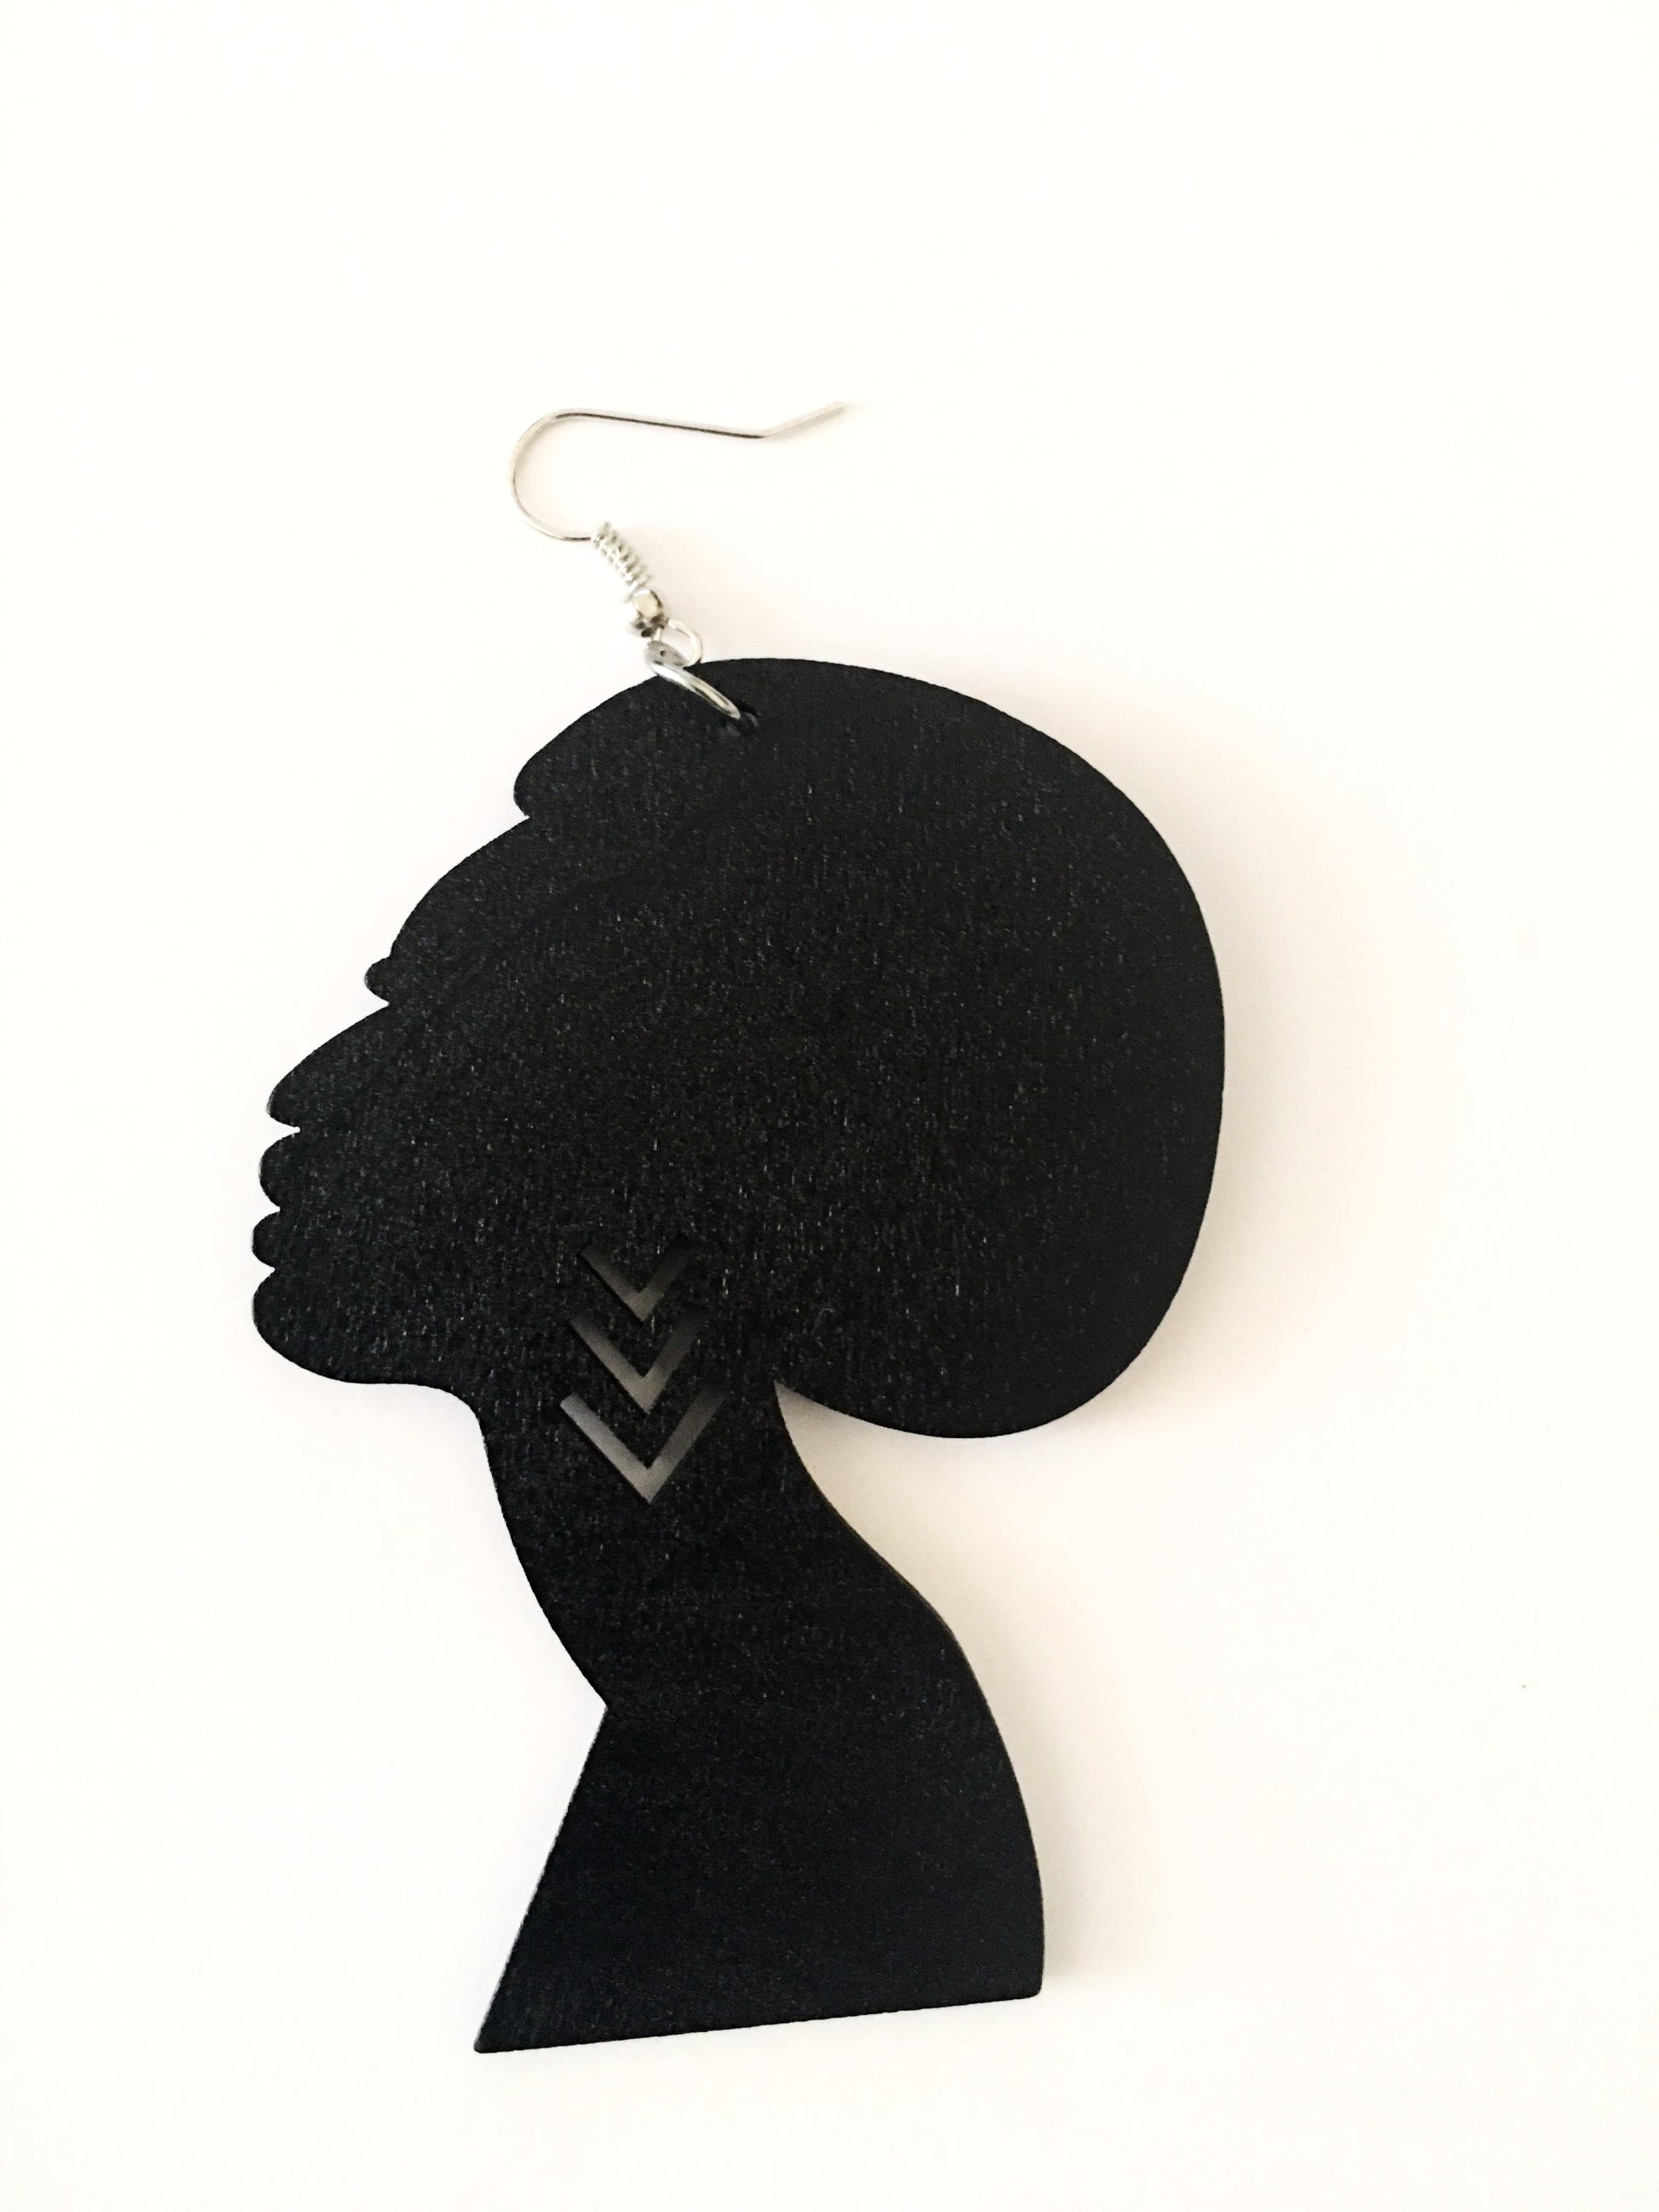 Afro head earrings